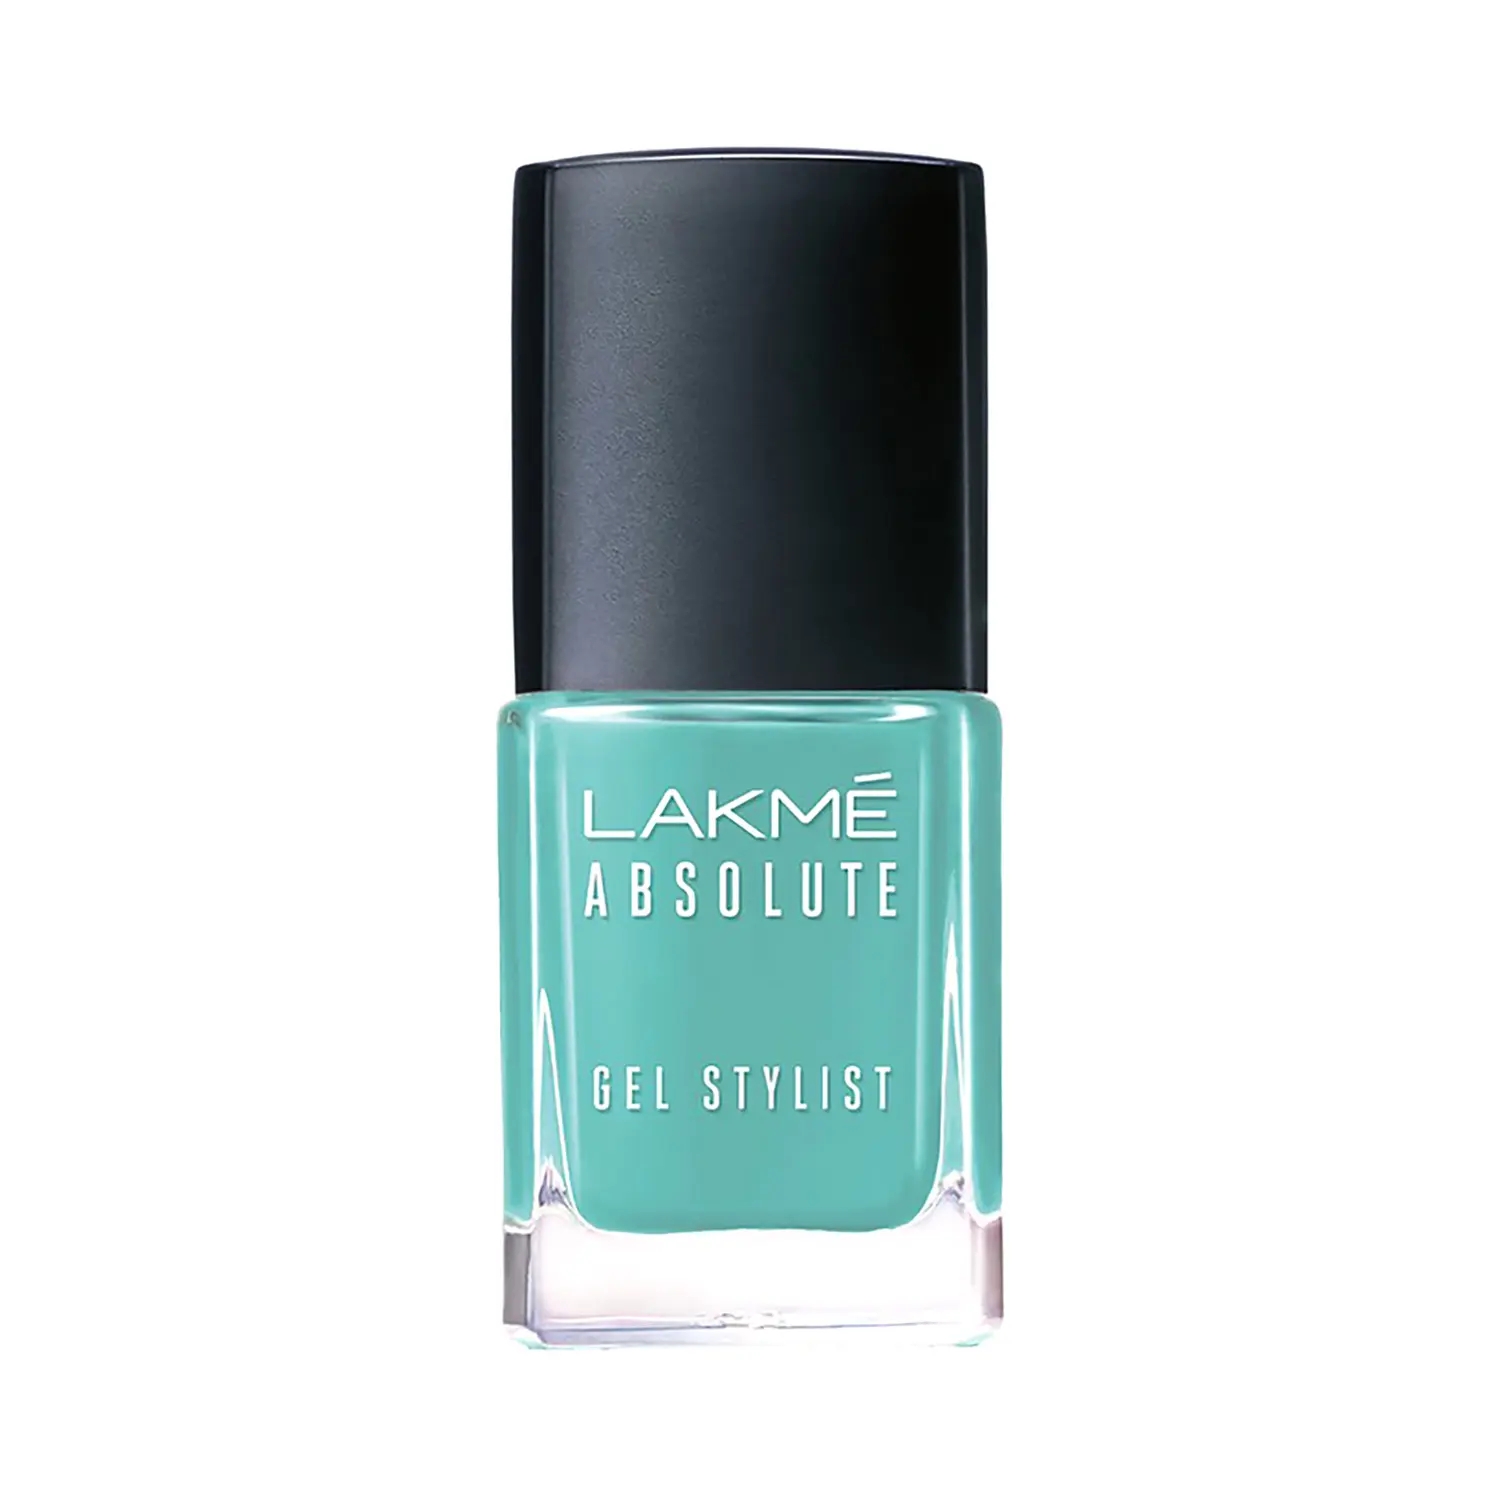 Lakme | Lakme Absolute Gel Stylist Nail Color - Skyfall (12ml)